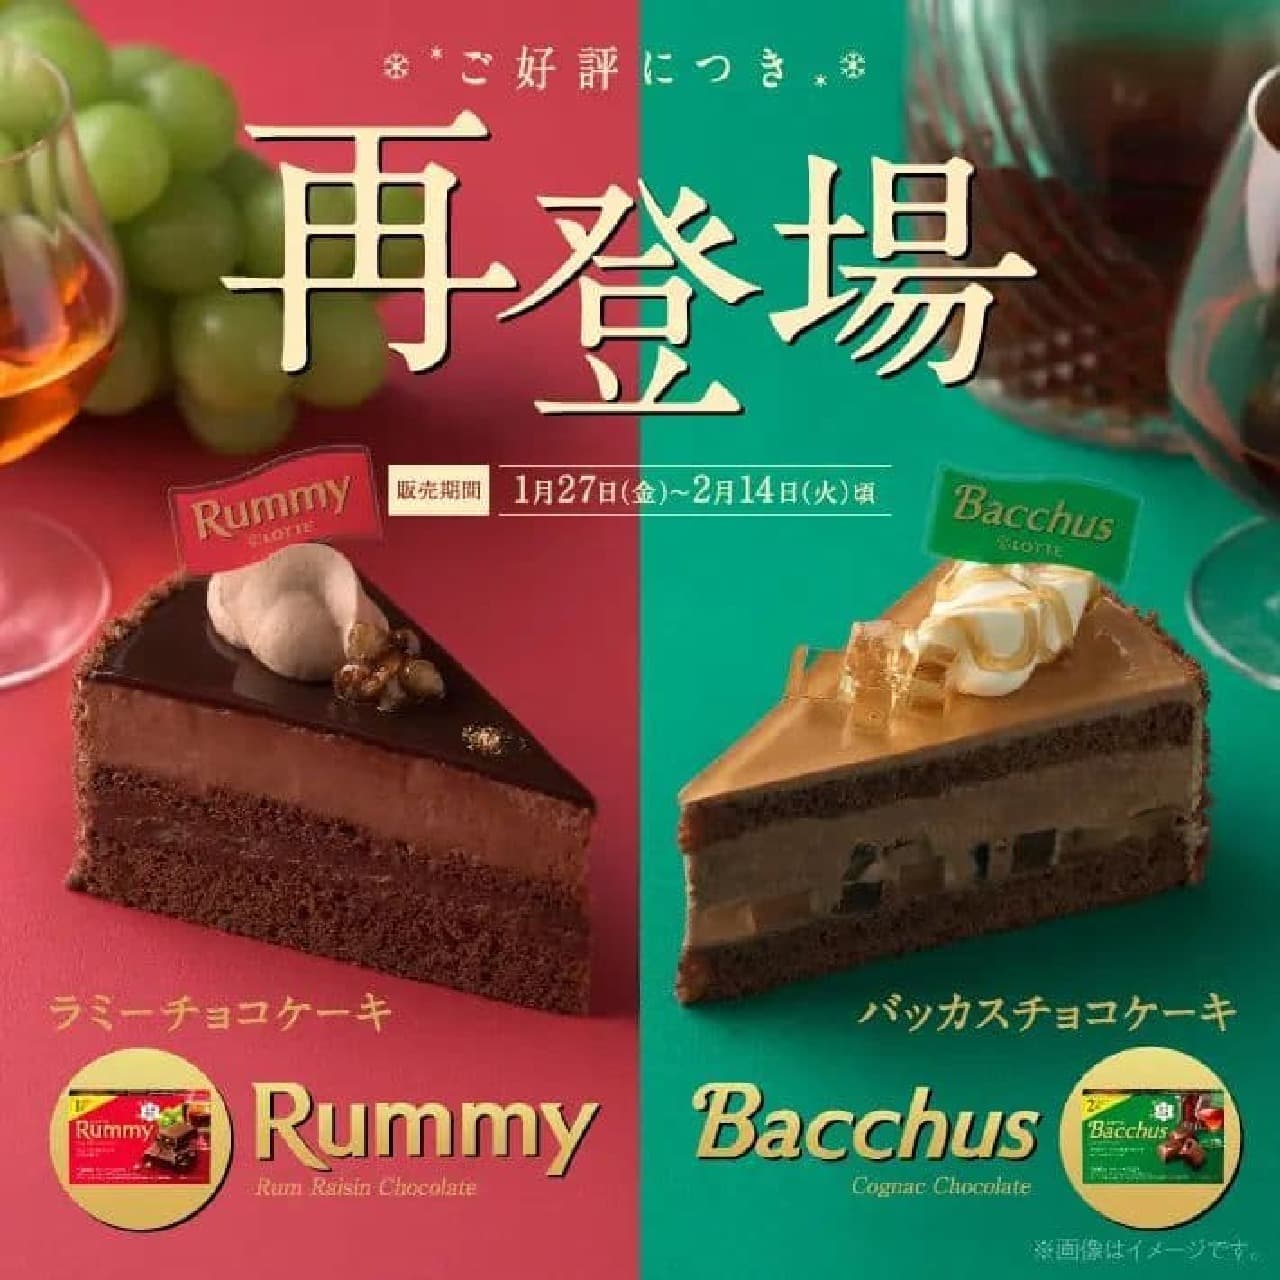 銀座コージーコーナー「ラミーチョコケーキ」「バッカスチョコケーキ」